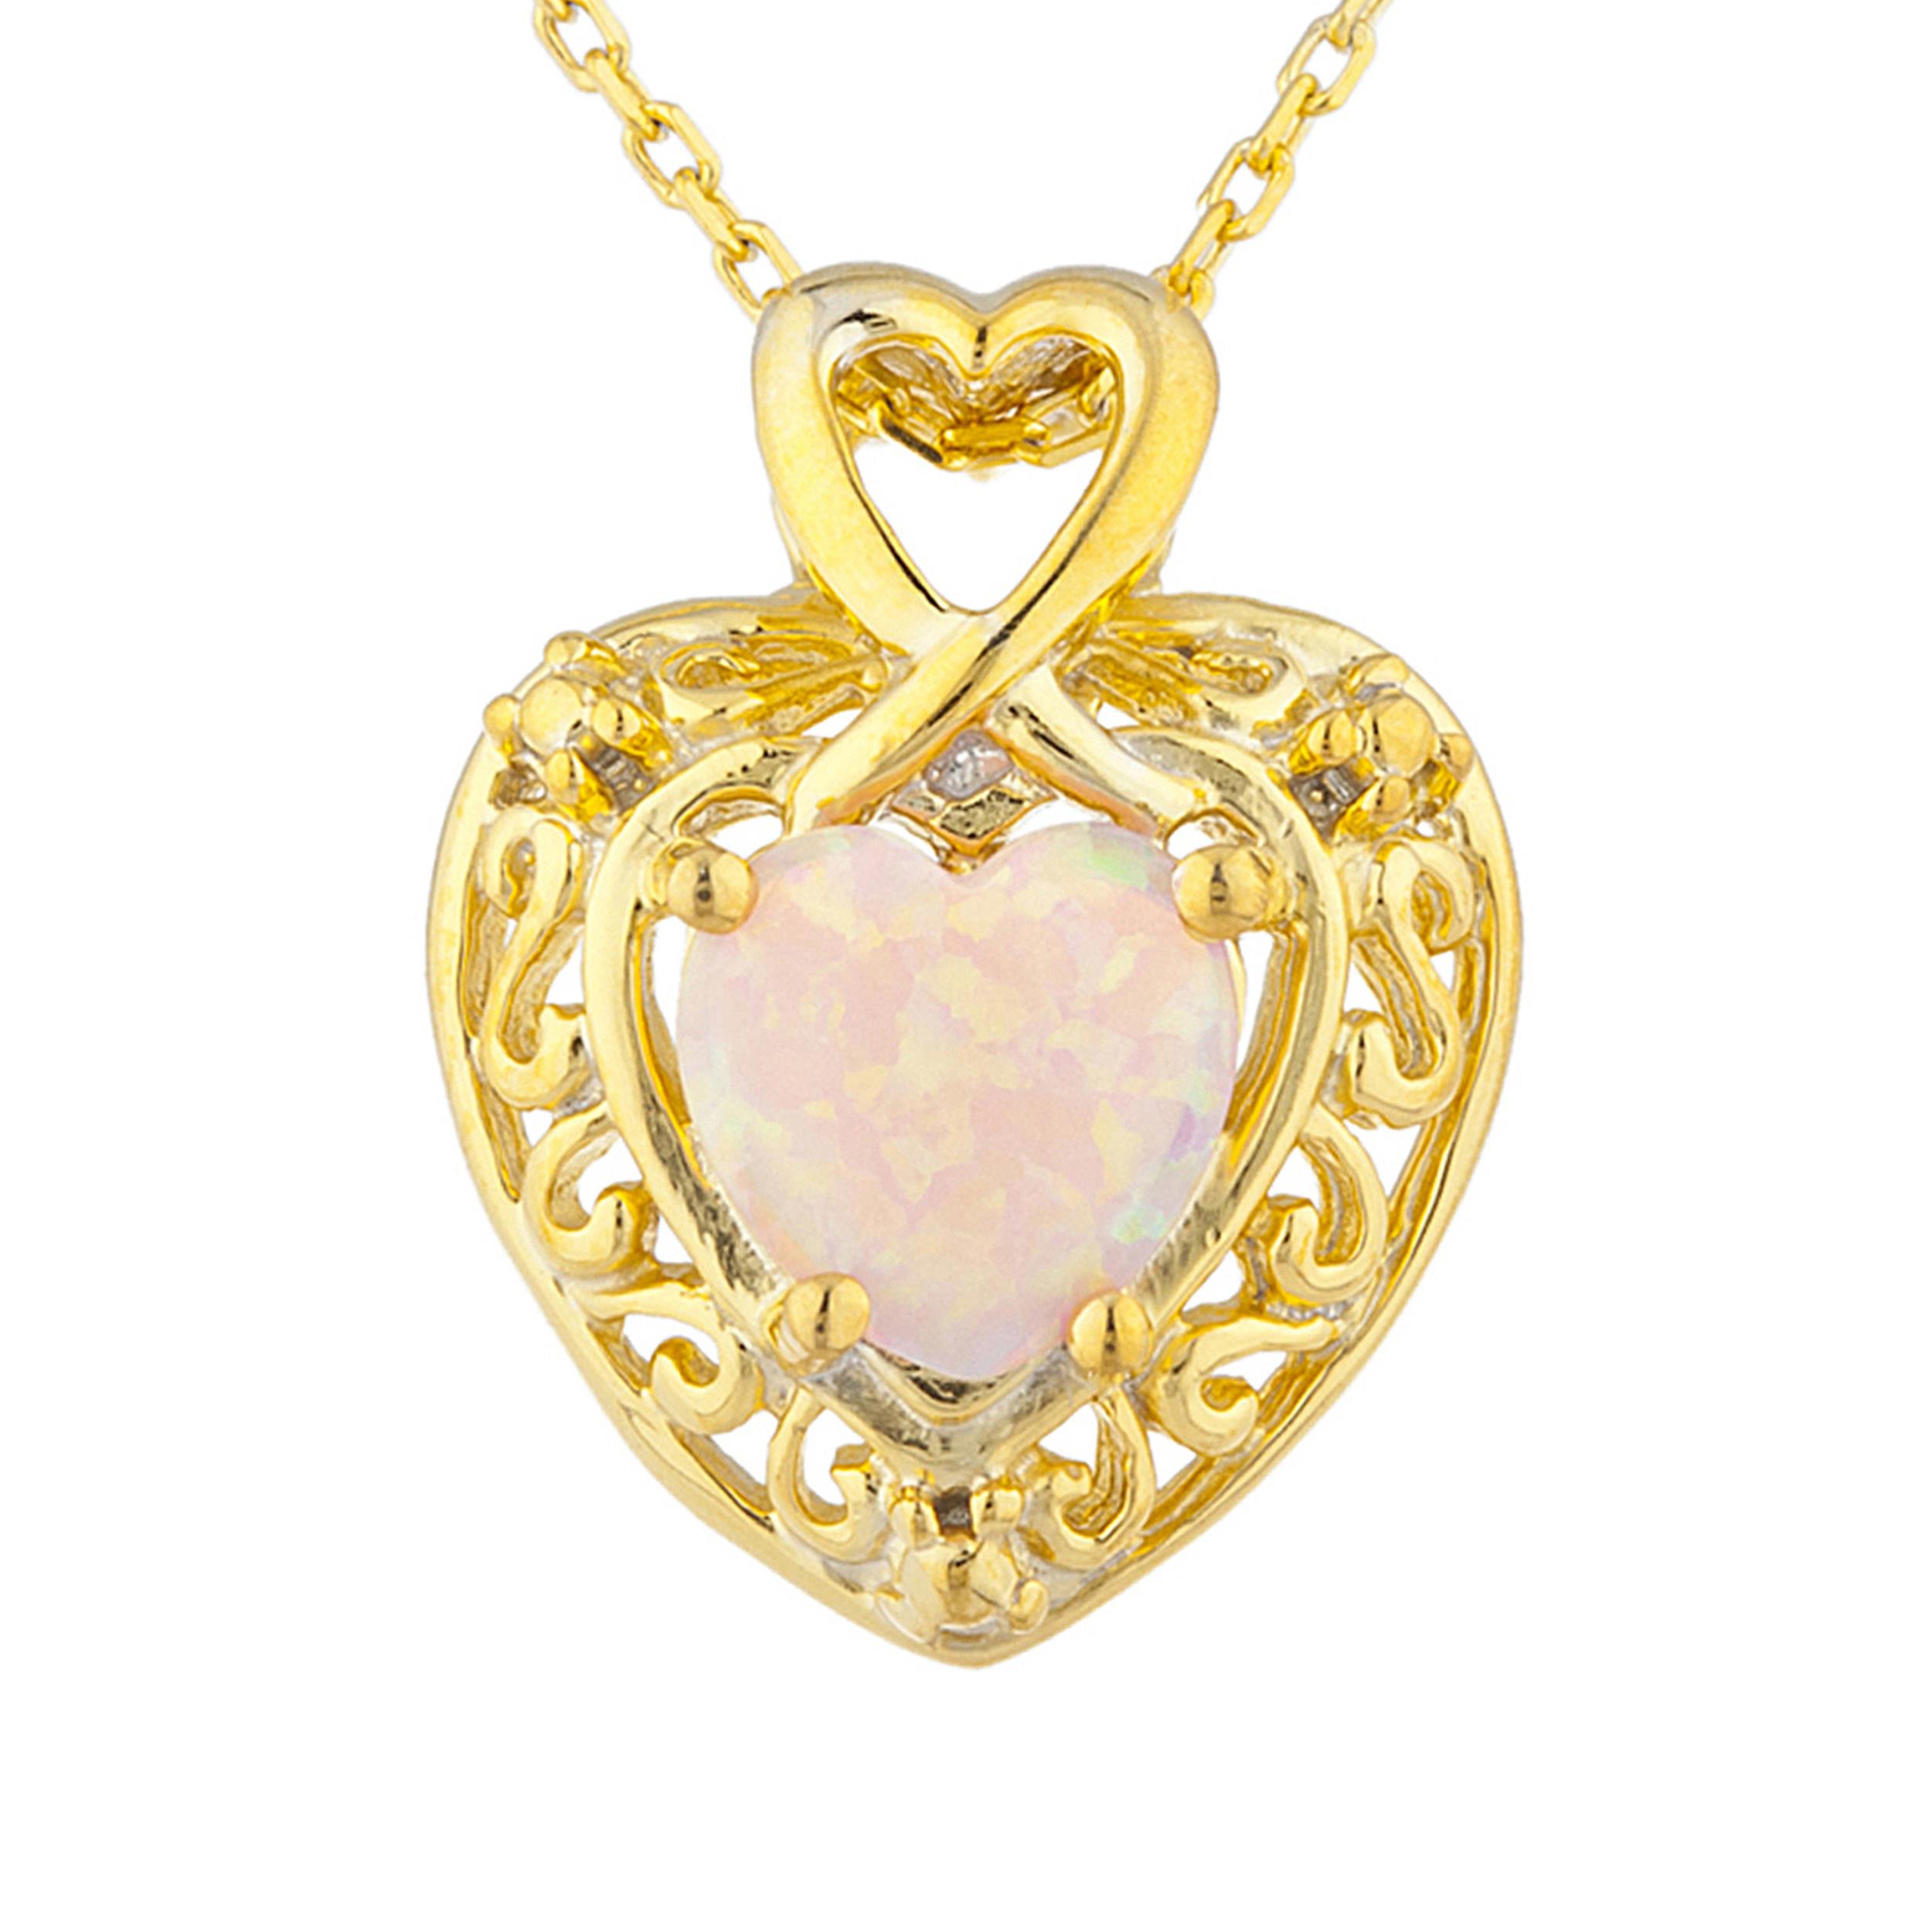 14Kt Gold Pink Opal Heart Design Pendant Necklace | eBay